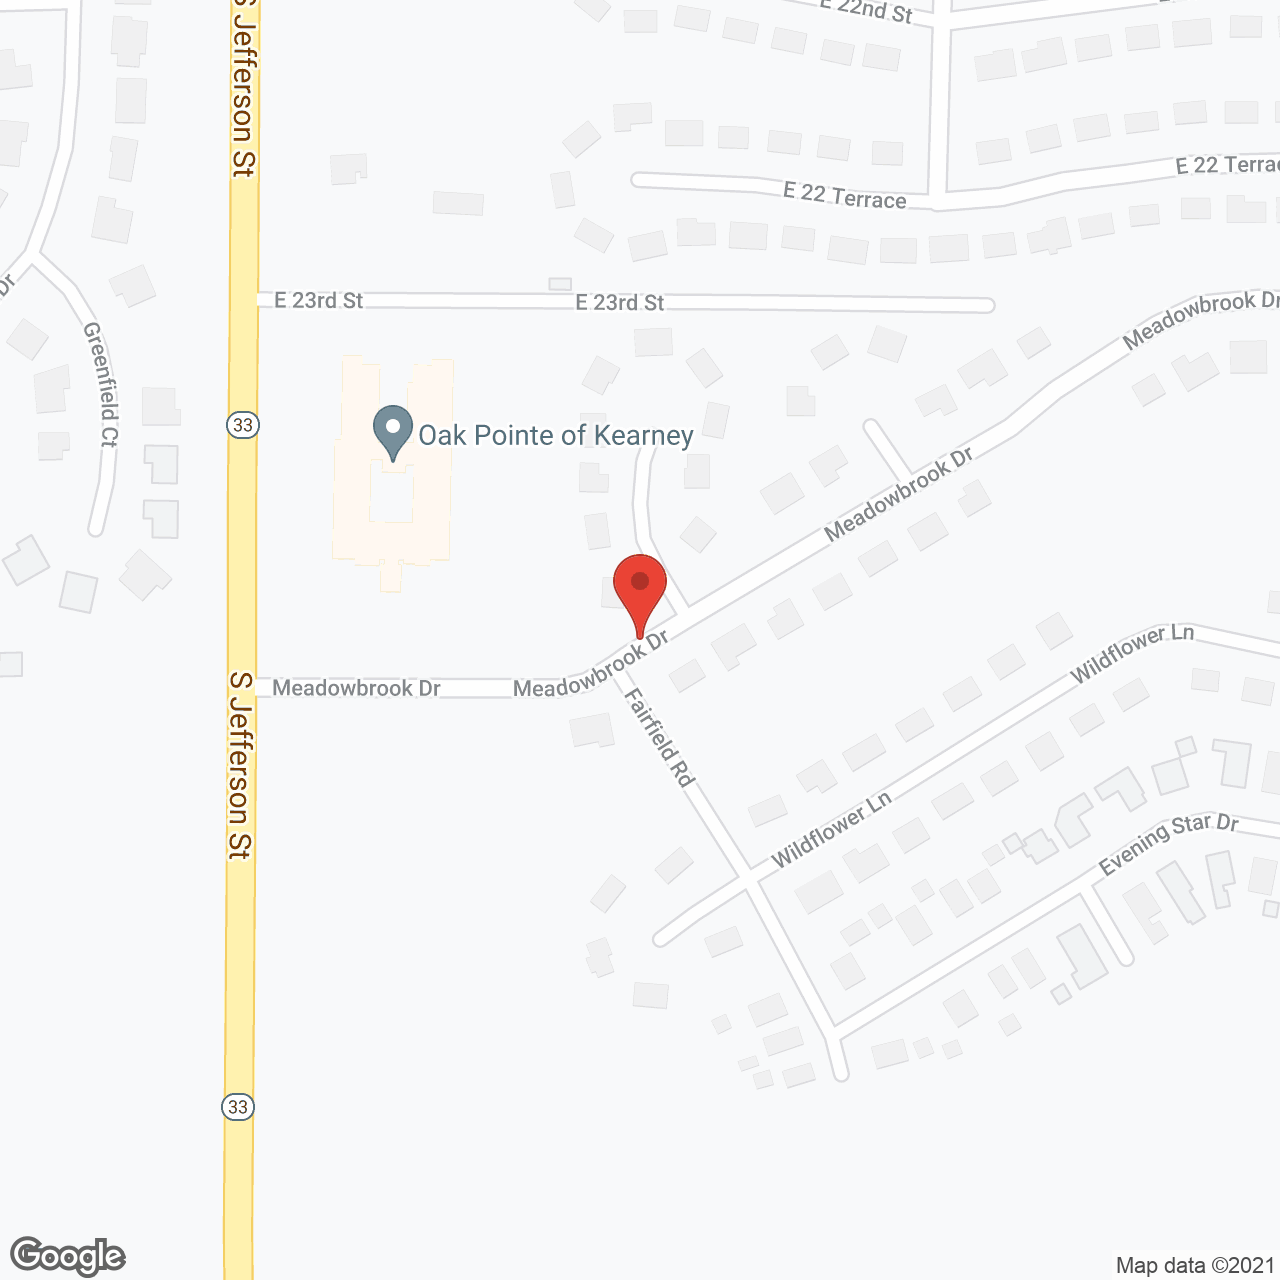 Oak Pointe of Kearney in google map